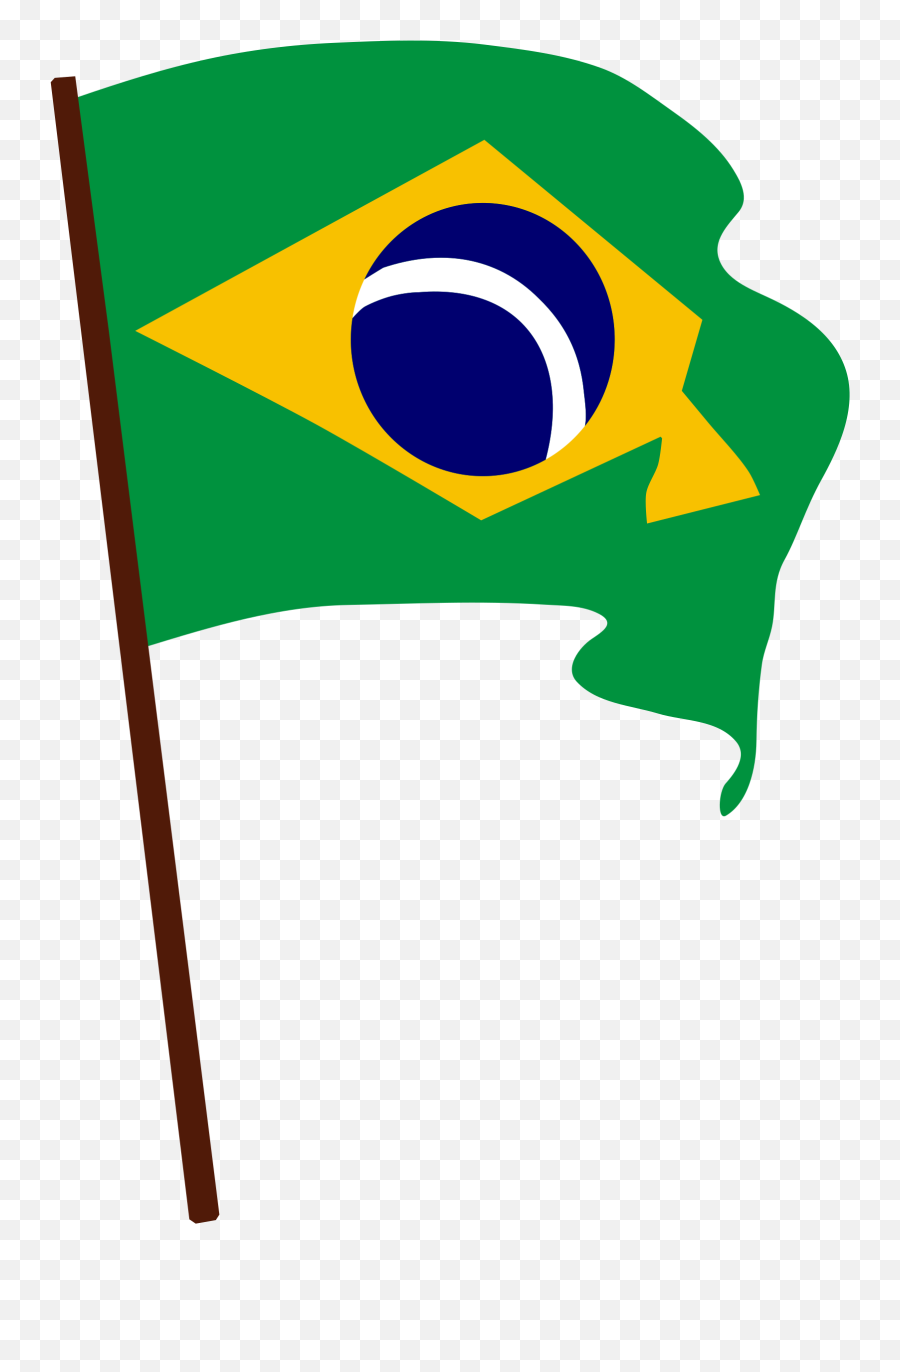 Brazil Png 6 Image - Brazil Clipart,Brazil Png